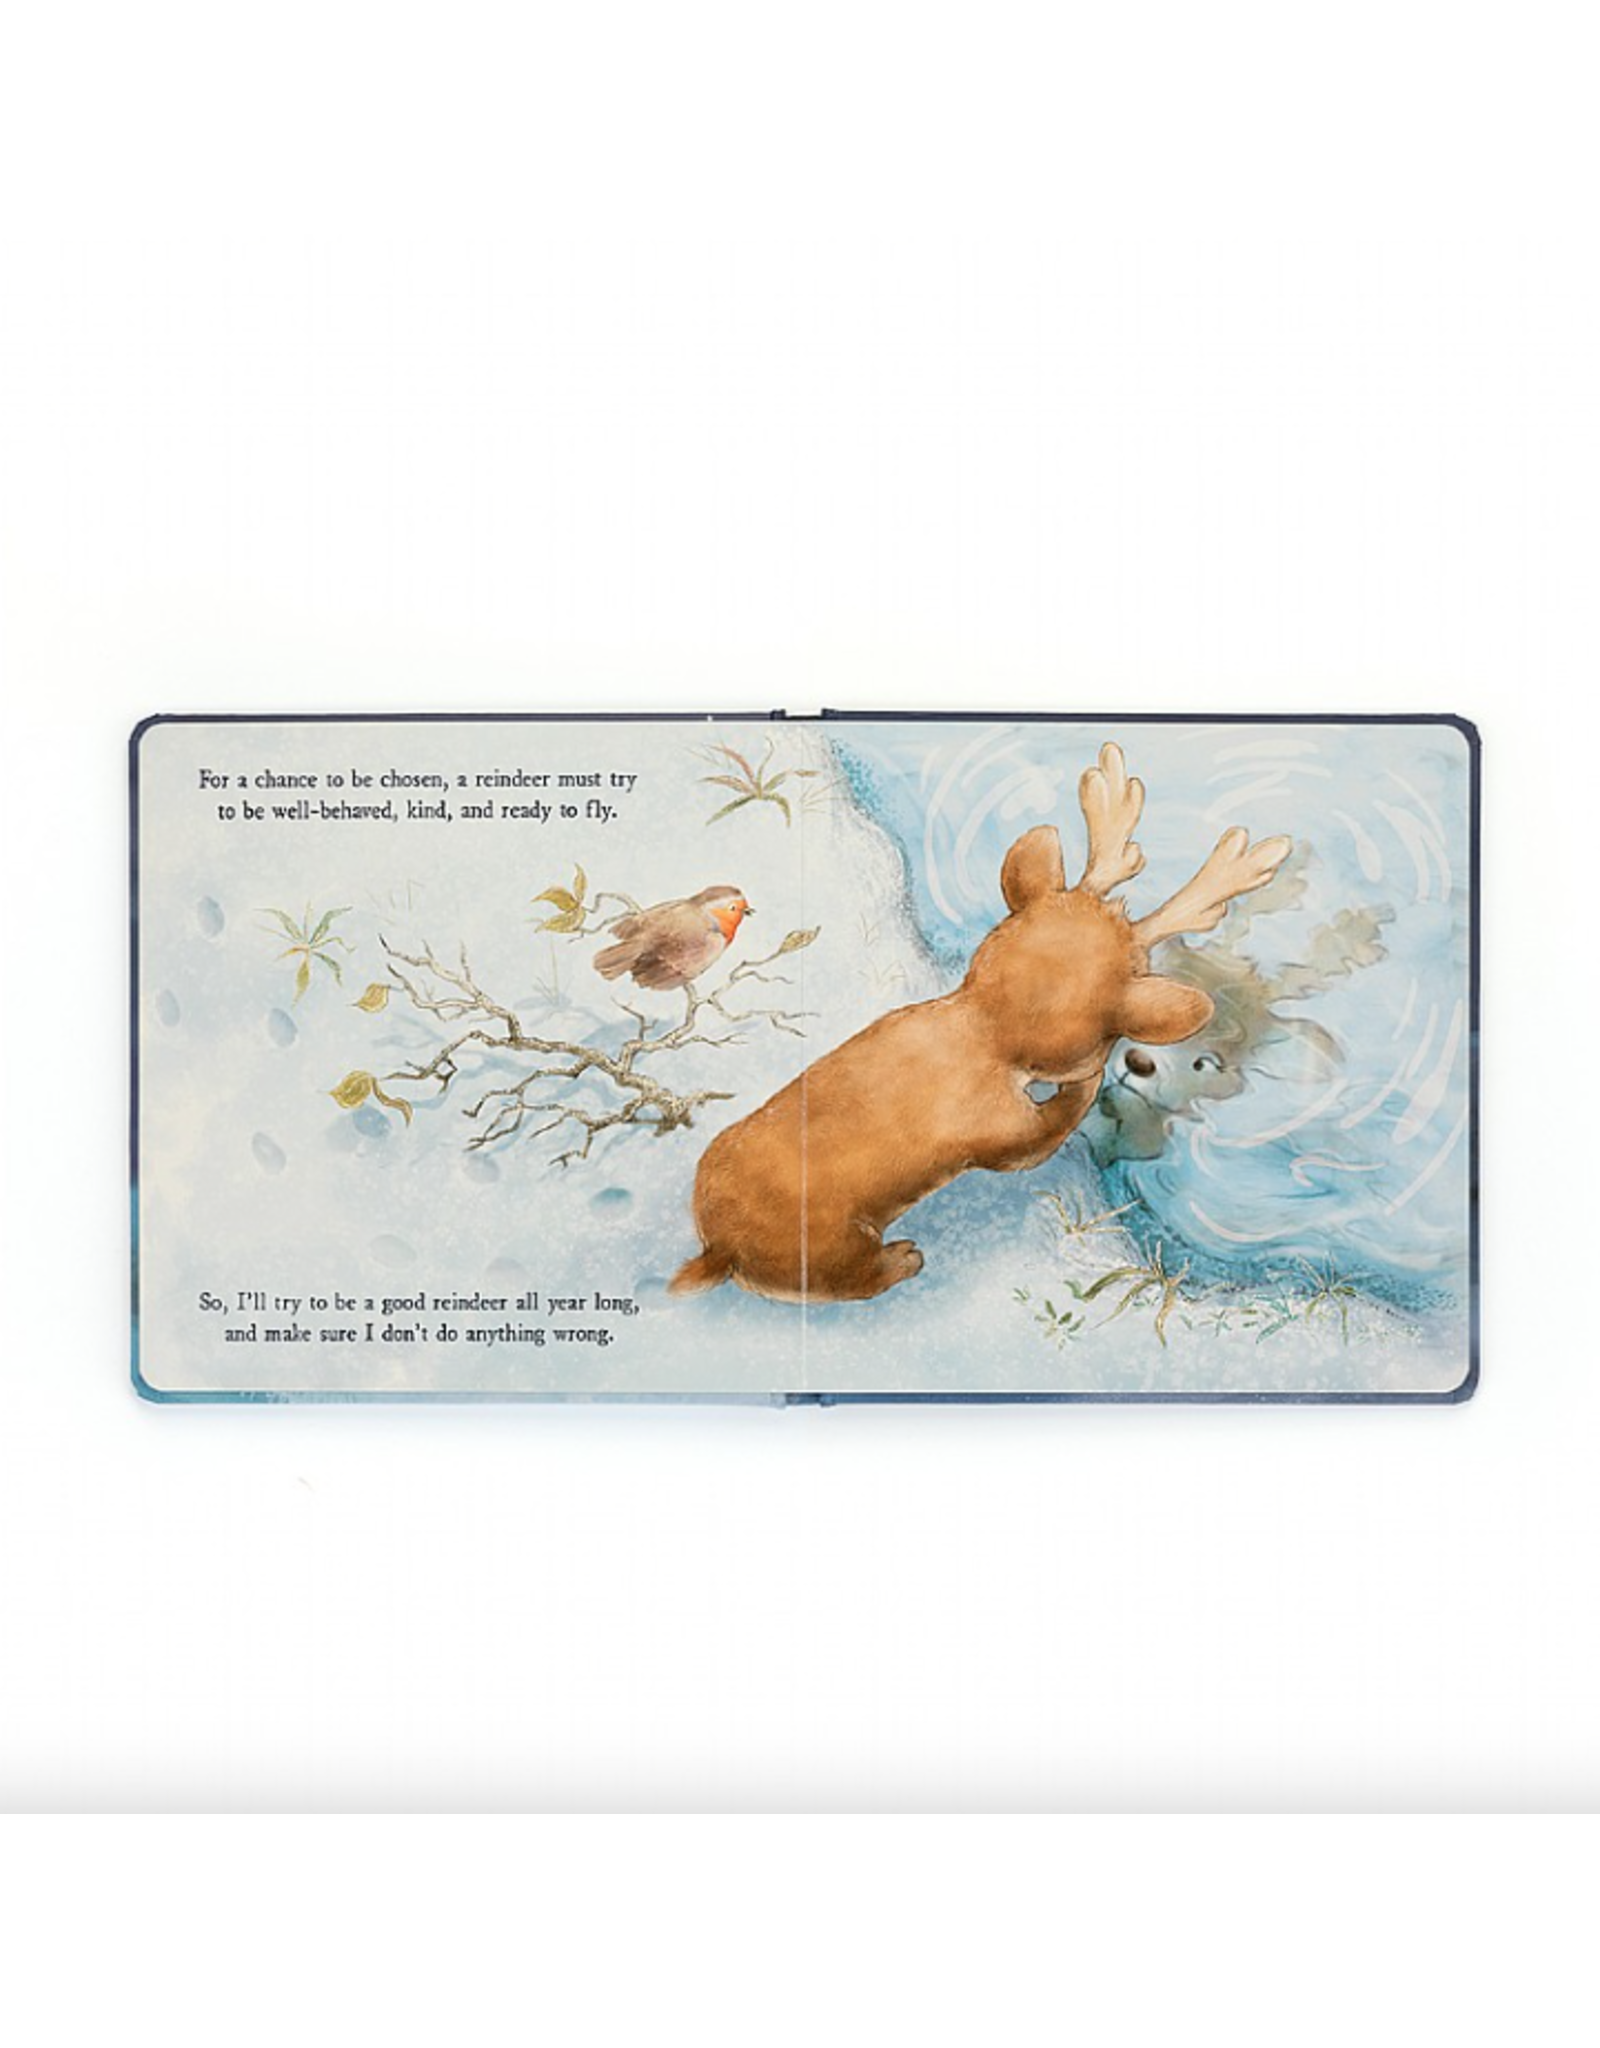 Mitzi Reindeer's Dream Book